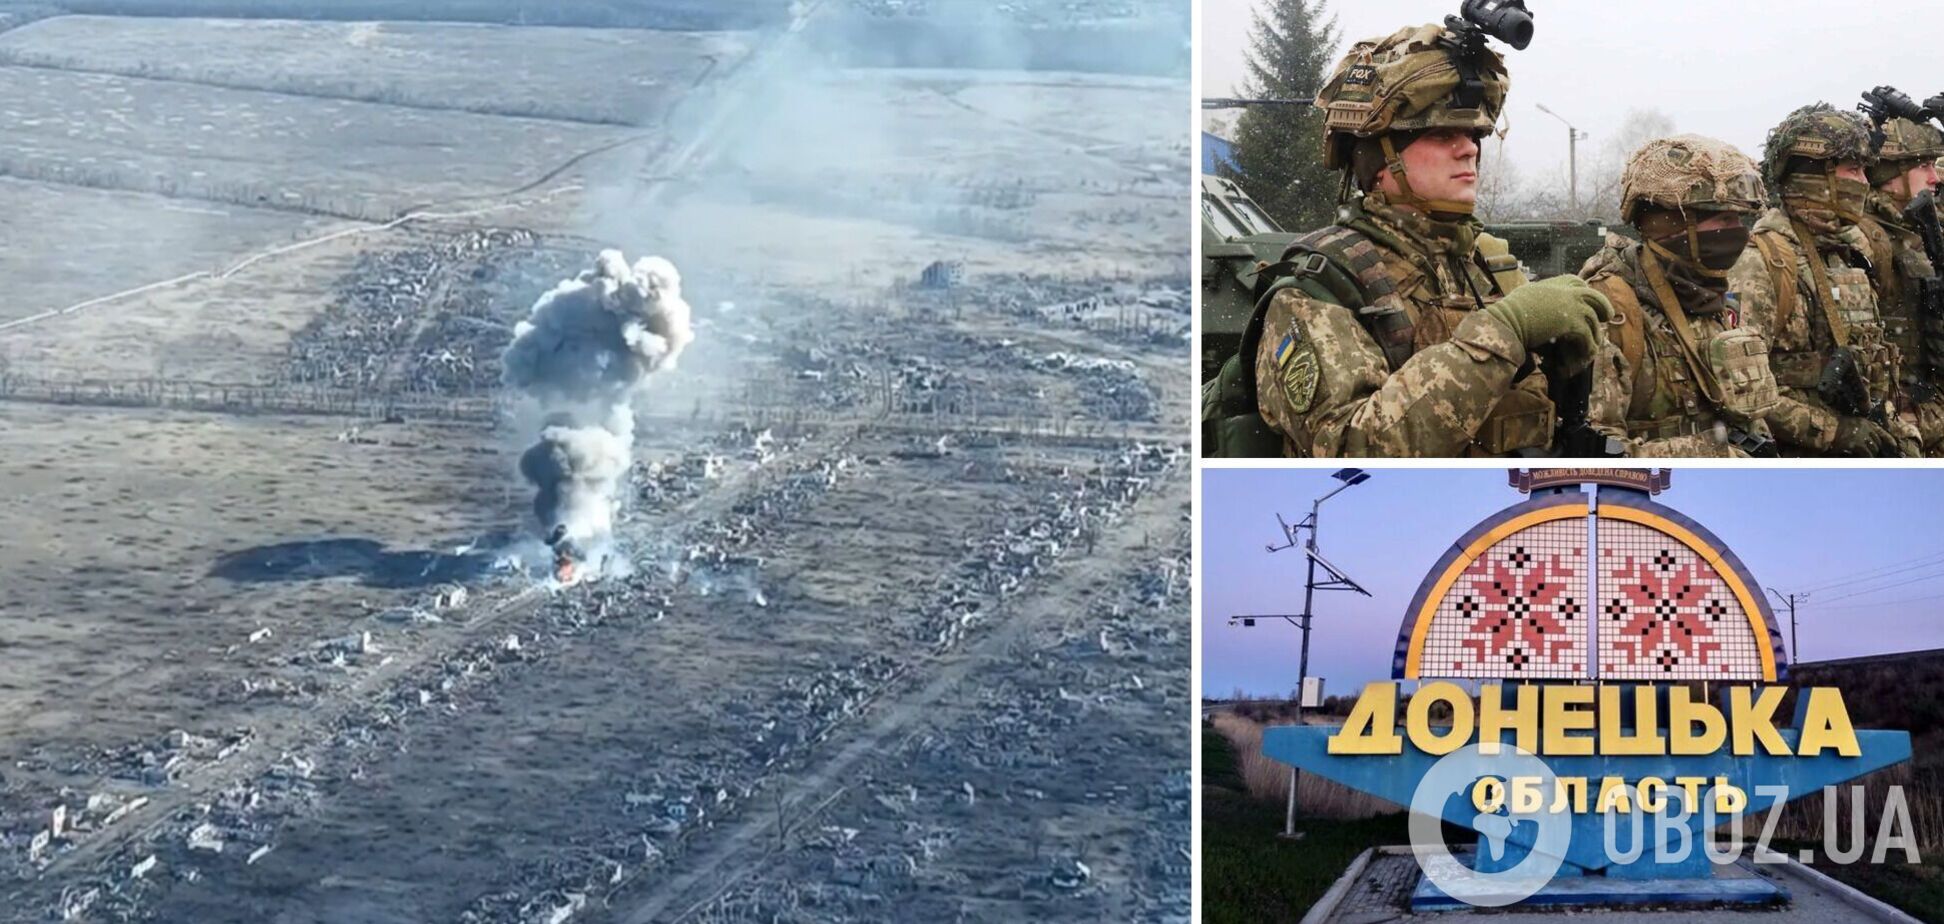 Українські десантники неподалік Донецька відбили ворожий штурм і знищили танк загарбників. Відео